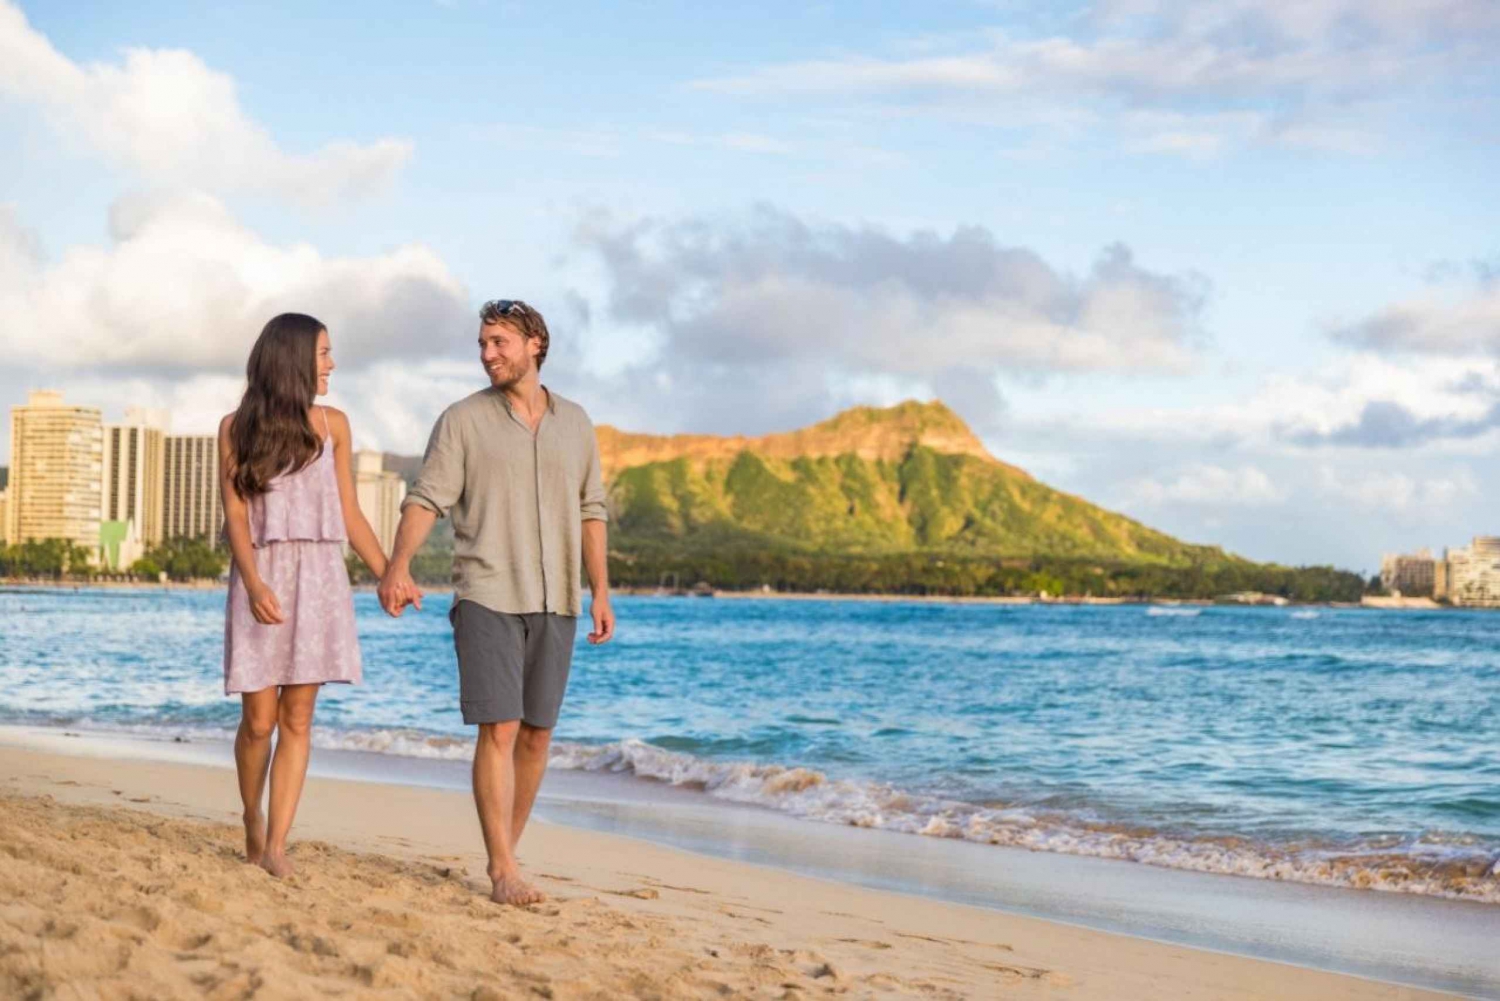 Rundgang durch Honolulu für Paare mit Charme